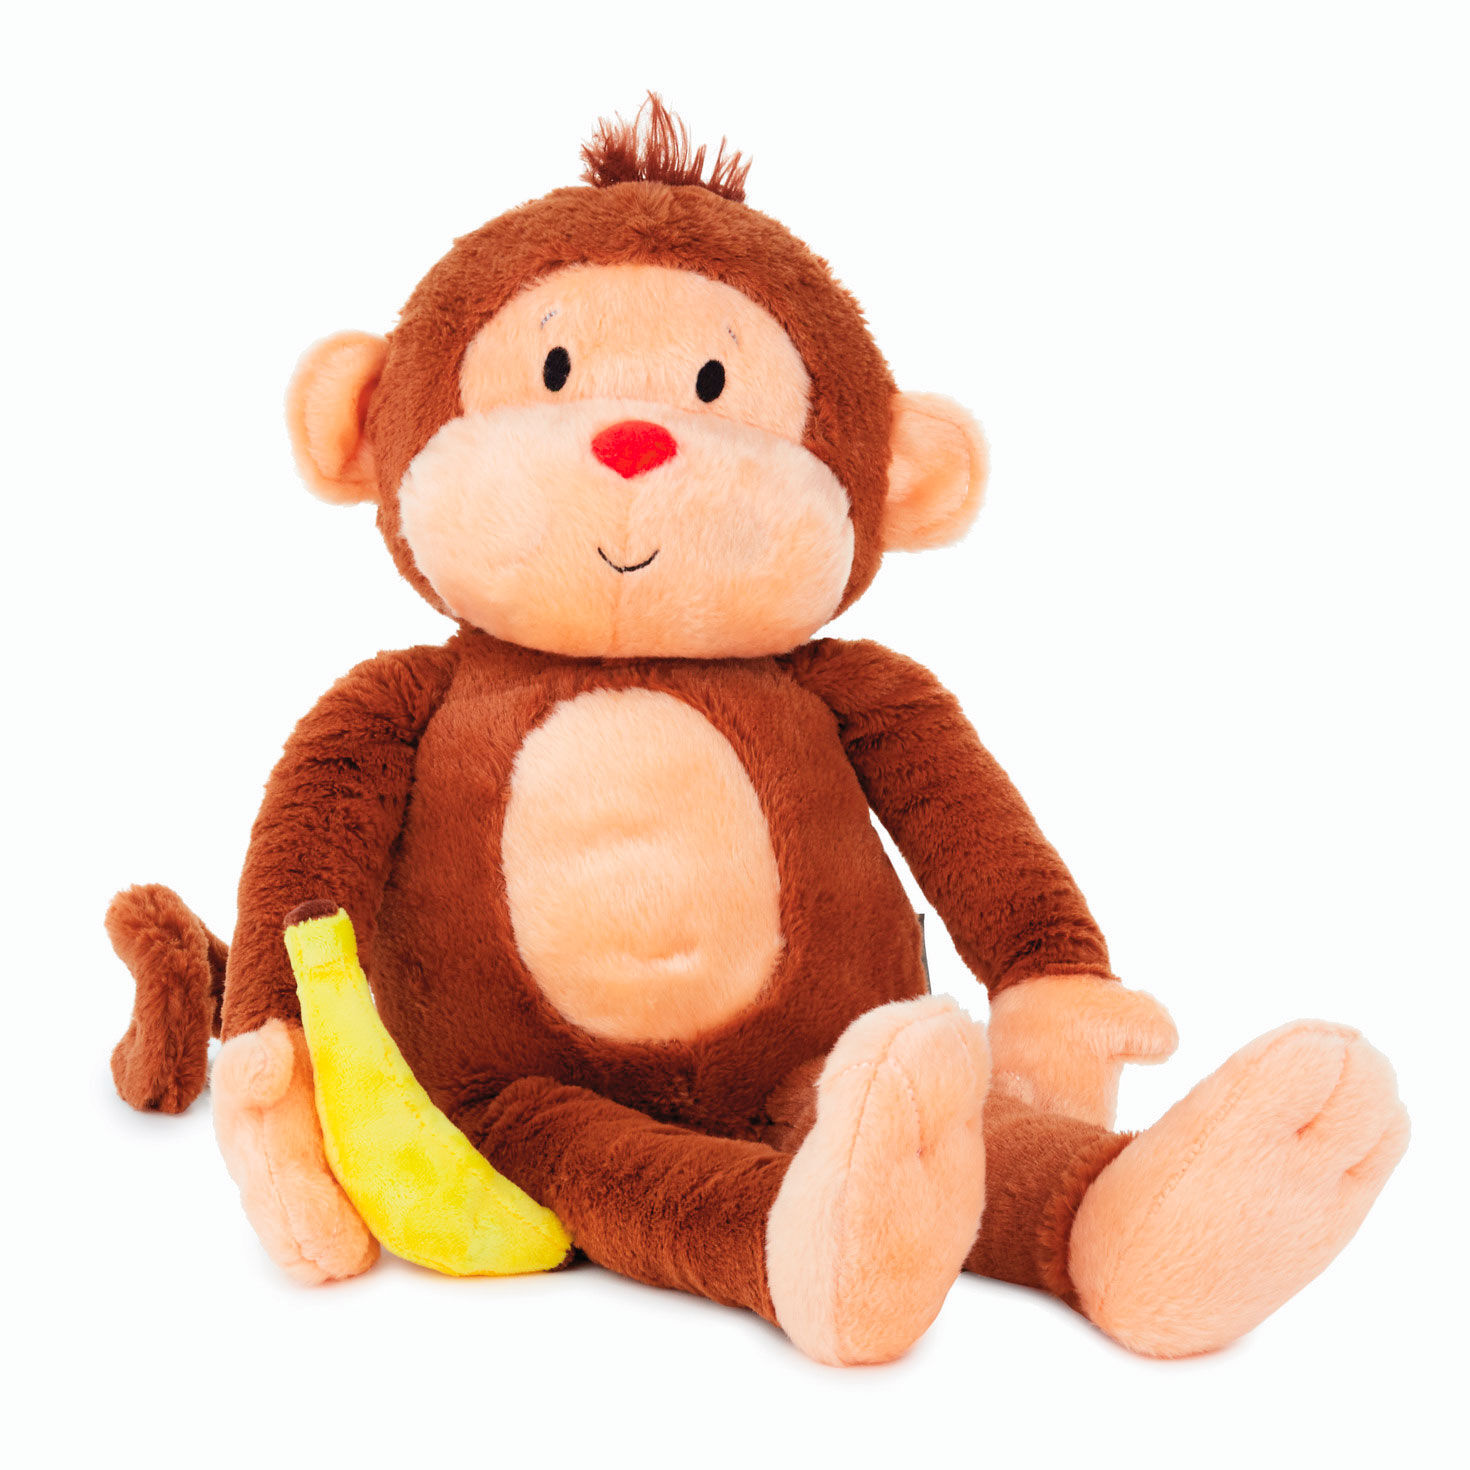 Goin' Bananas Monkey Singing Stuffed Animal, 12